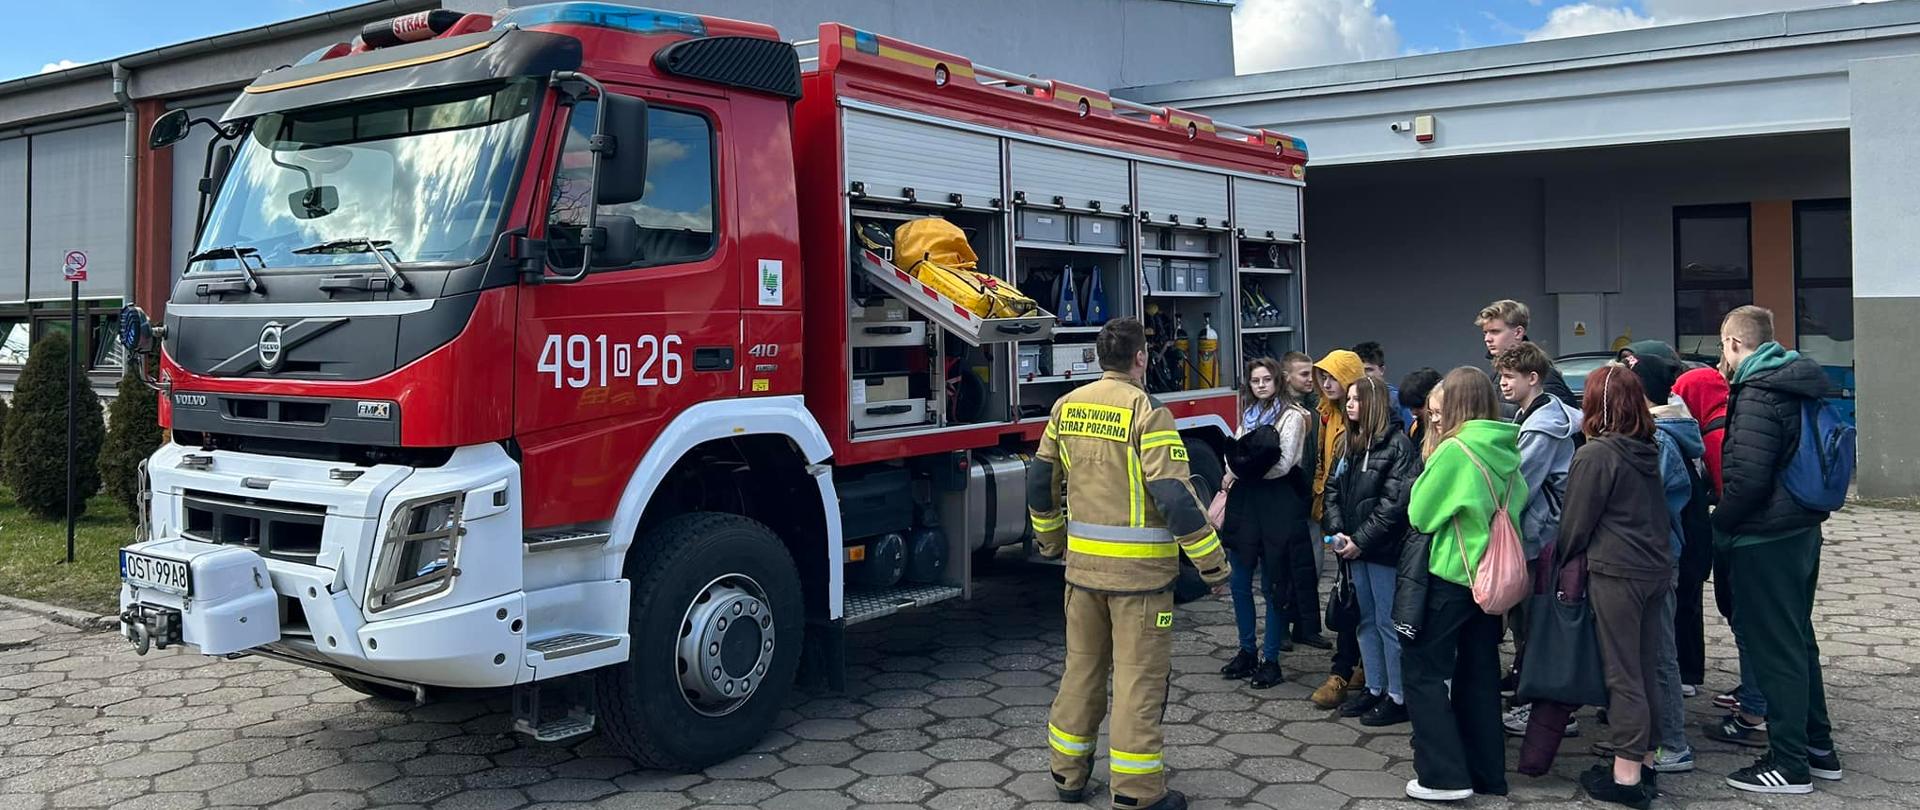 Na zdjęciu znajduje się pojazd pożarniczy z otwartymi skrytkami, strażak w ubraniu specjalnym oraz młodzież